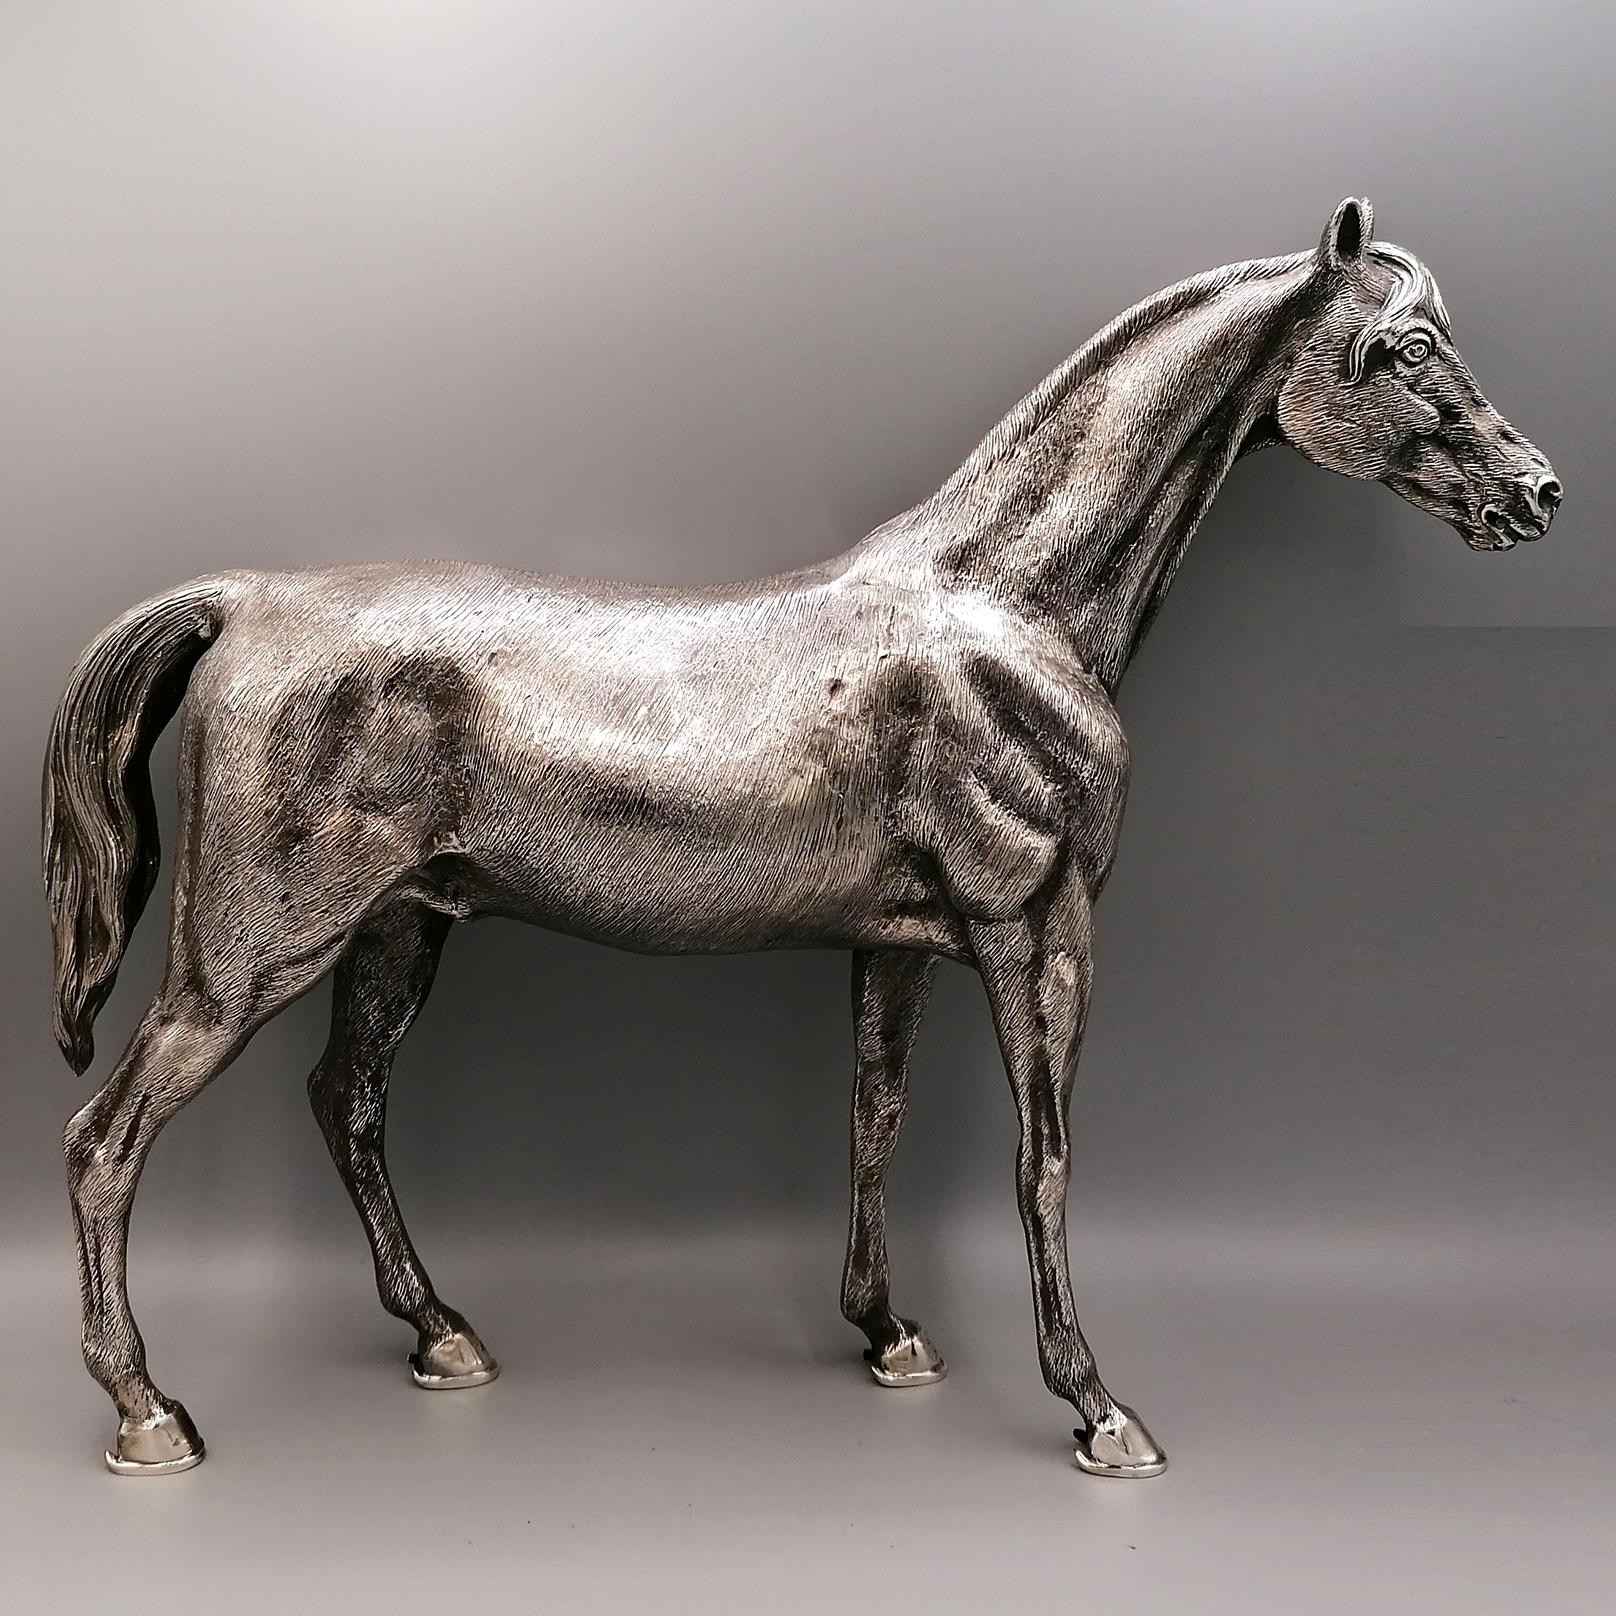 Statue de cheval en argent massif 800 entièrement réalisée à la main. Le cheval a été réalisé en deux parties avec la technique de la fusion en terre et, une fois coulé et détaché, assemblé par soudure. Par la suite, il a été ciselé afin de mettre